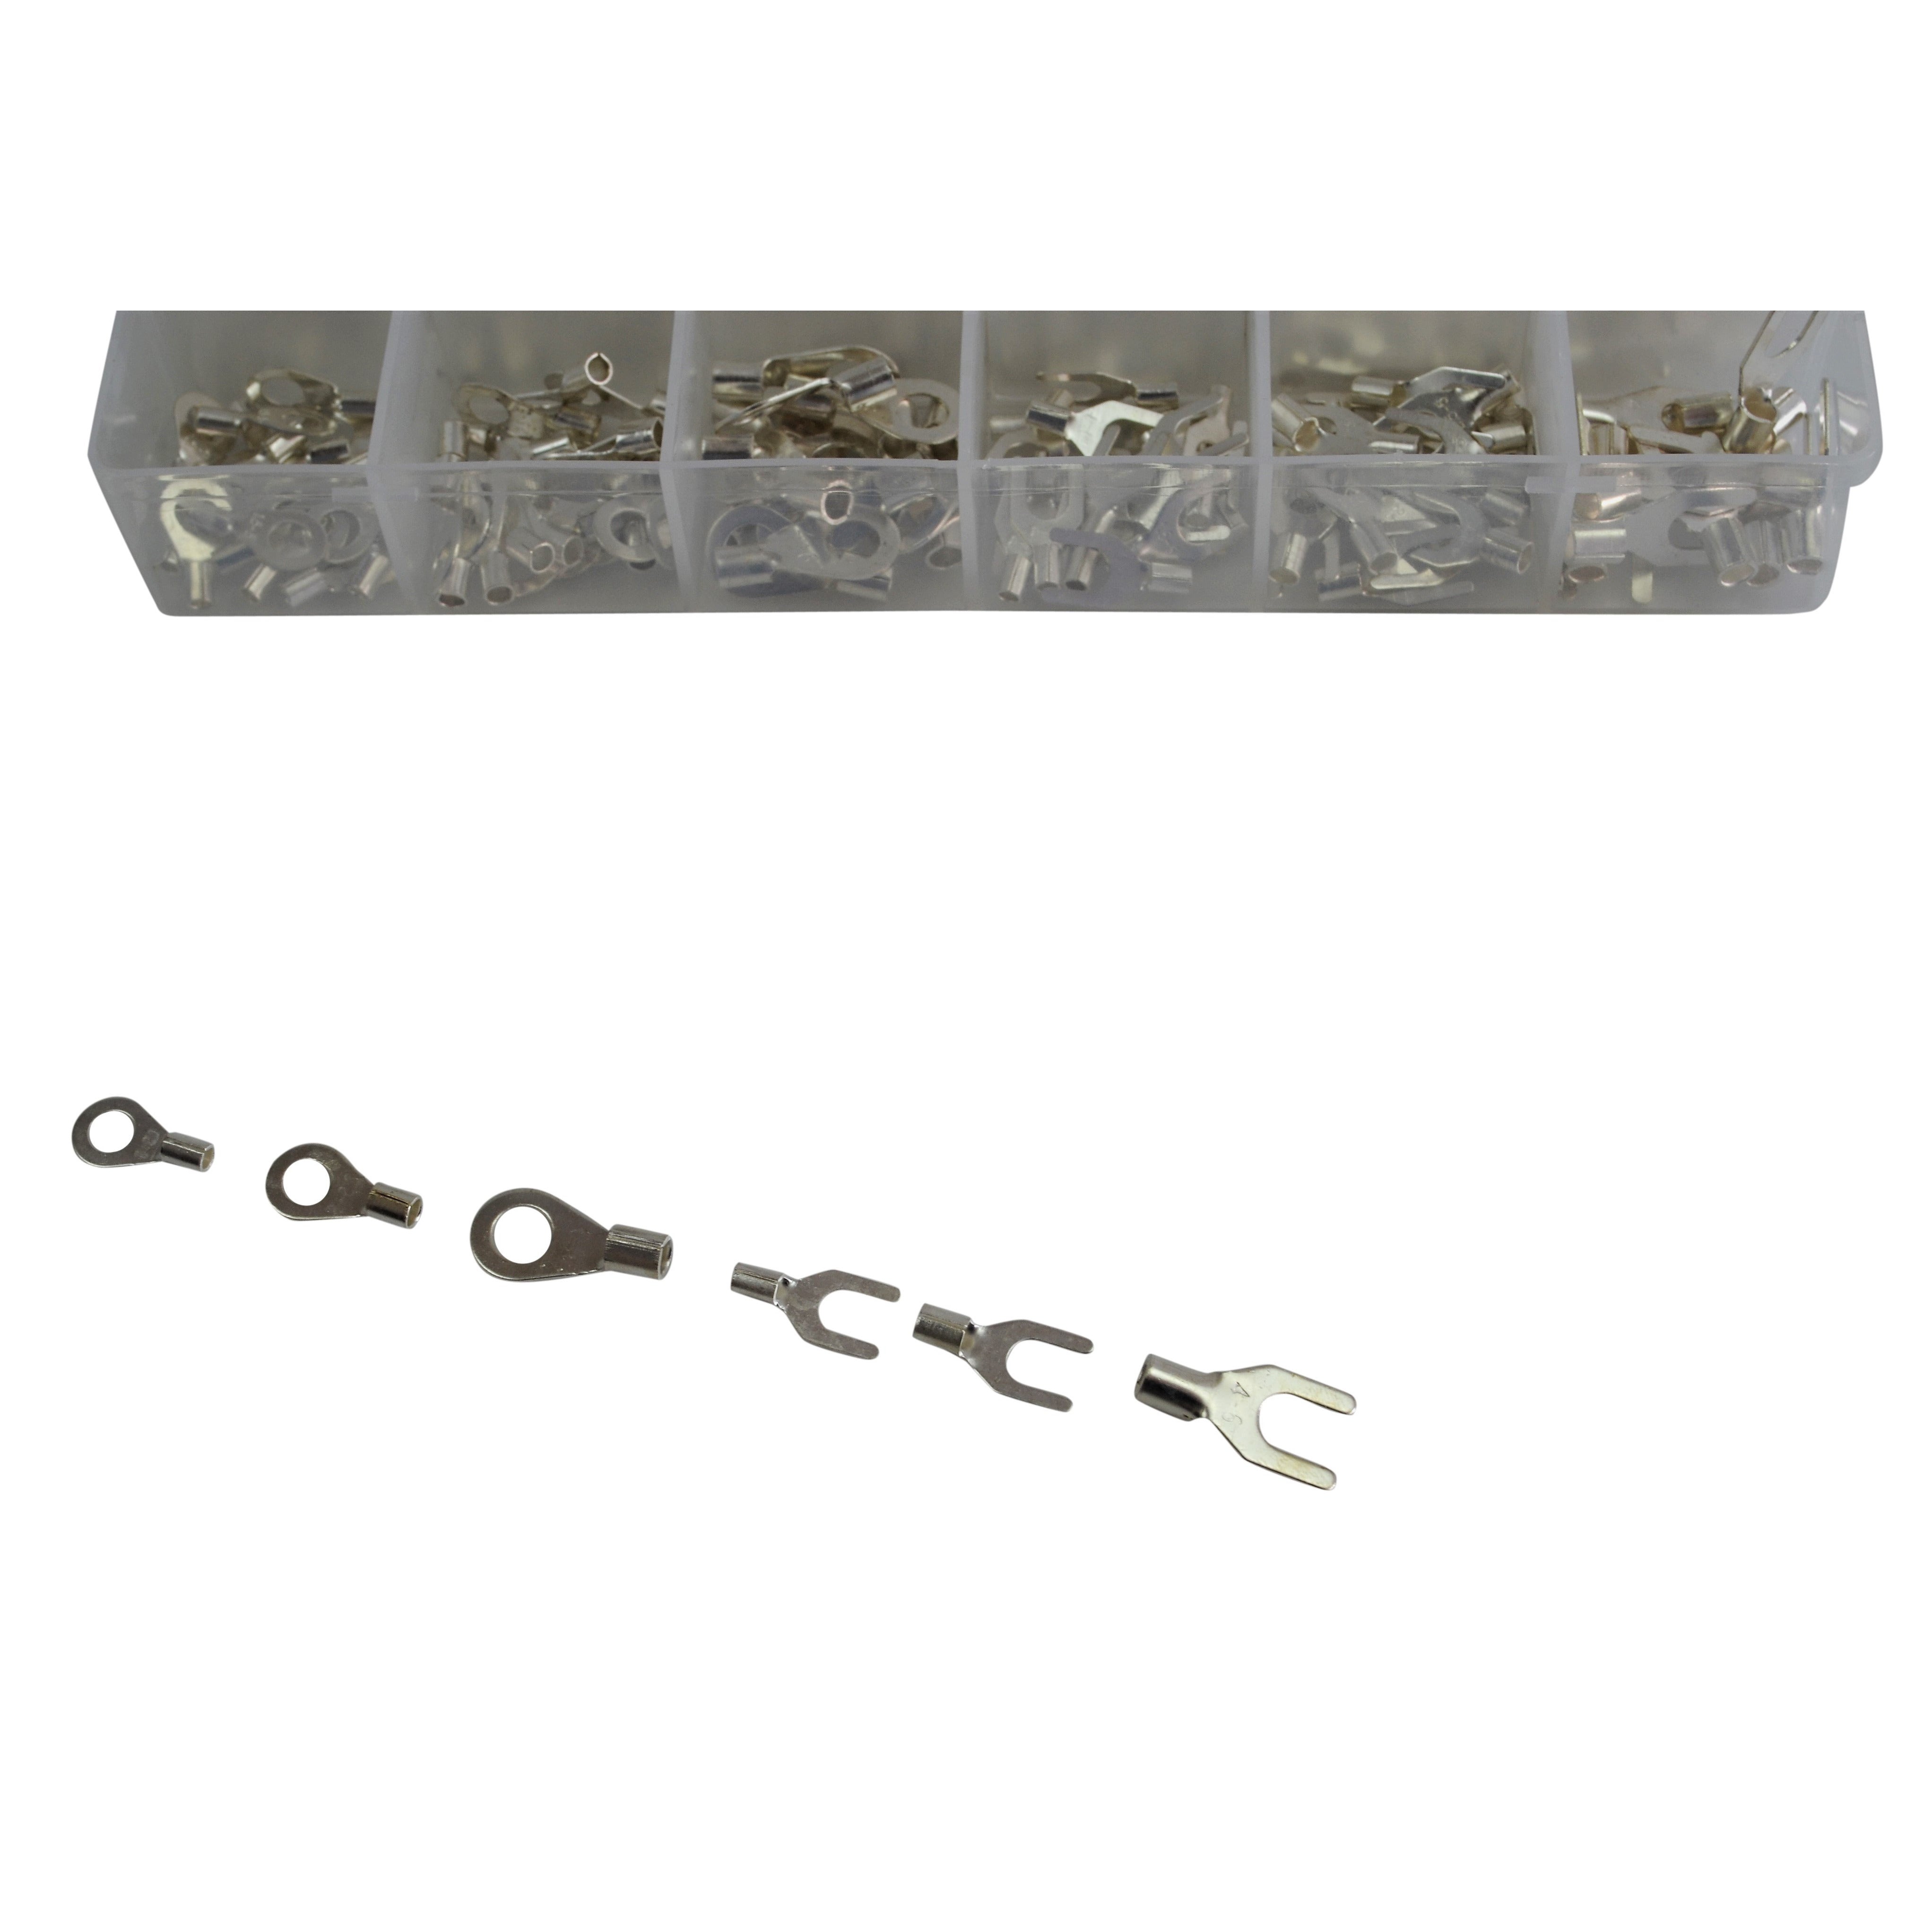 12/24 V Grab Kit Assortment Solder Lug Electrical Wire CrimpTerminal Kit 420 Connectors